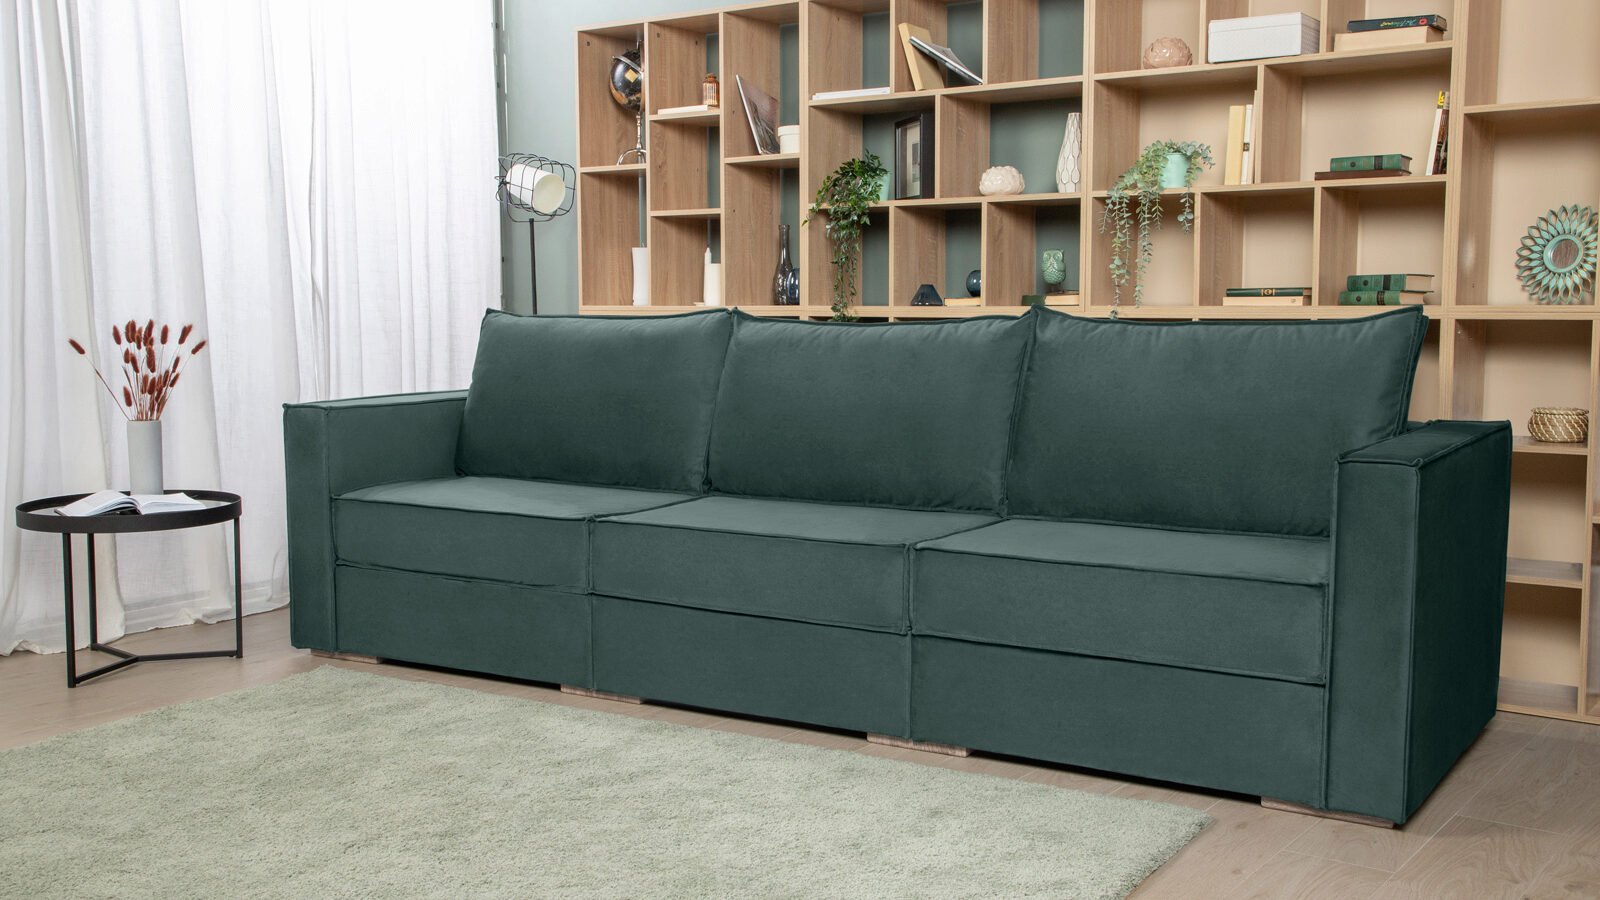 Модульный диван Hero 3-секционный с подлокотниками угловой секционный диван шезлонги крышки для гостиной эластичный диван кресло скользящий чехол набор стрейч l форма нужно купить 2шт